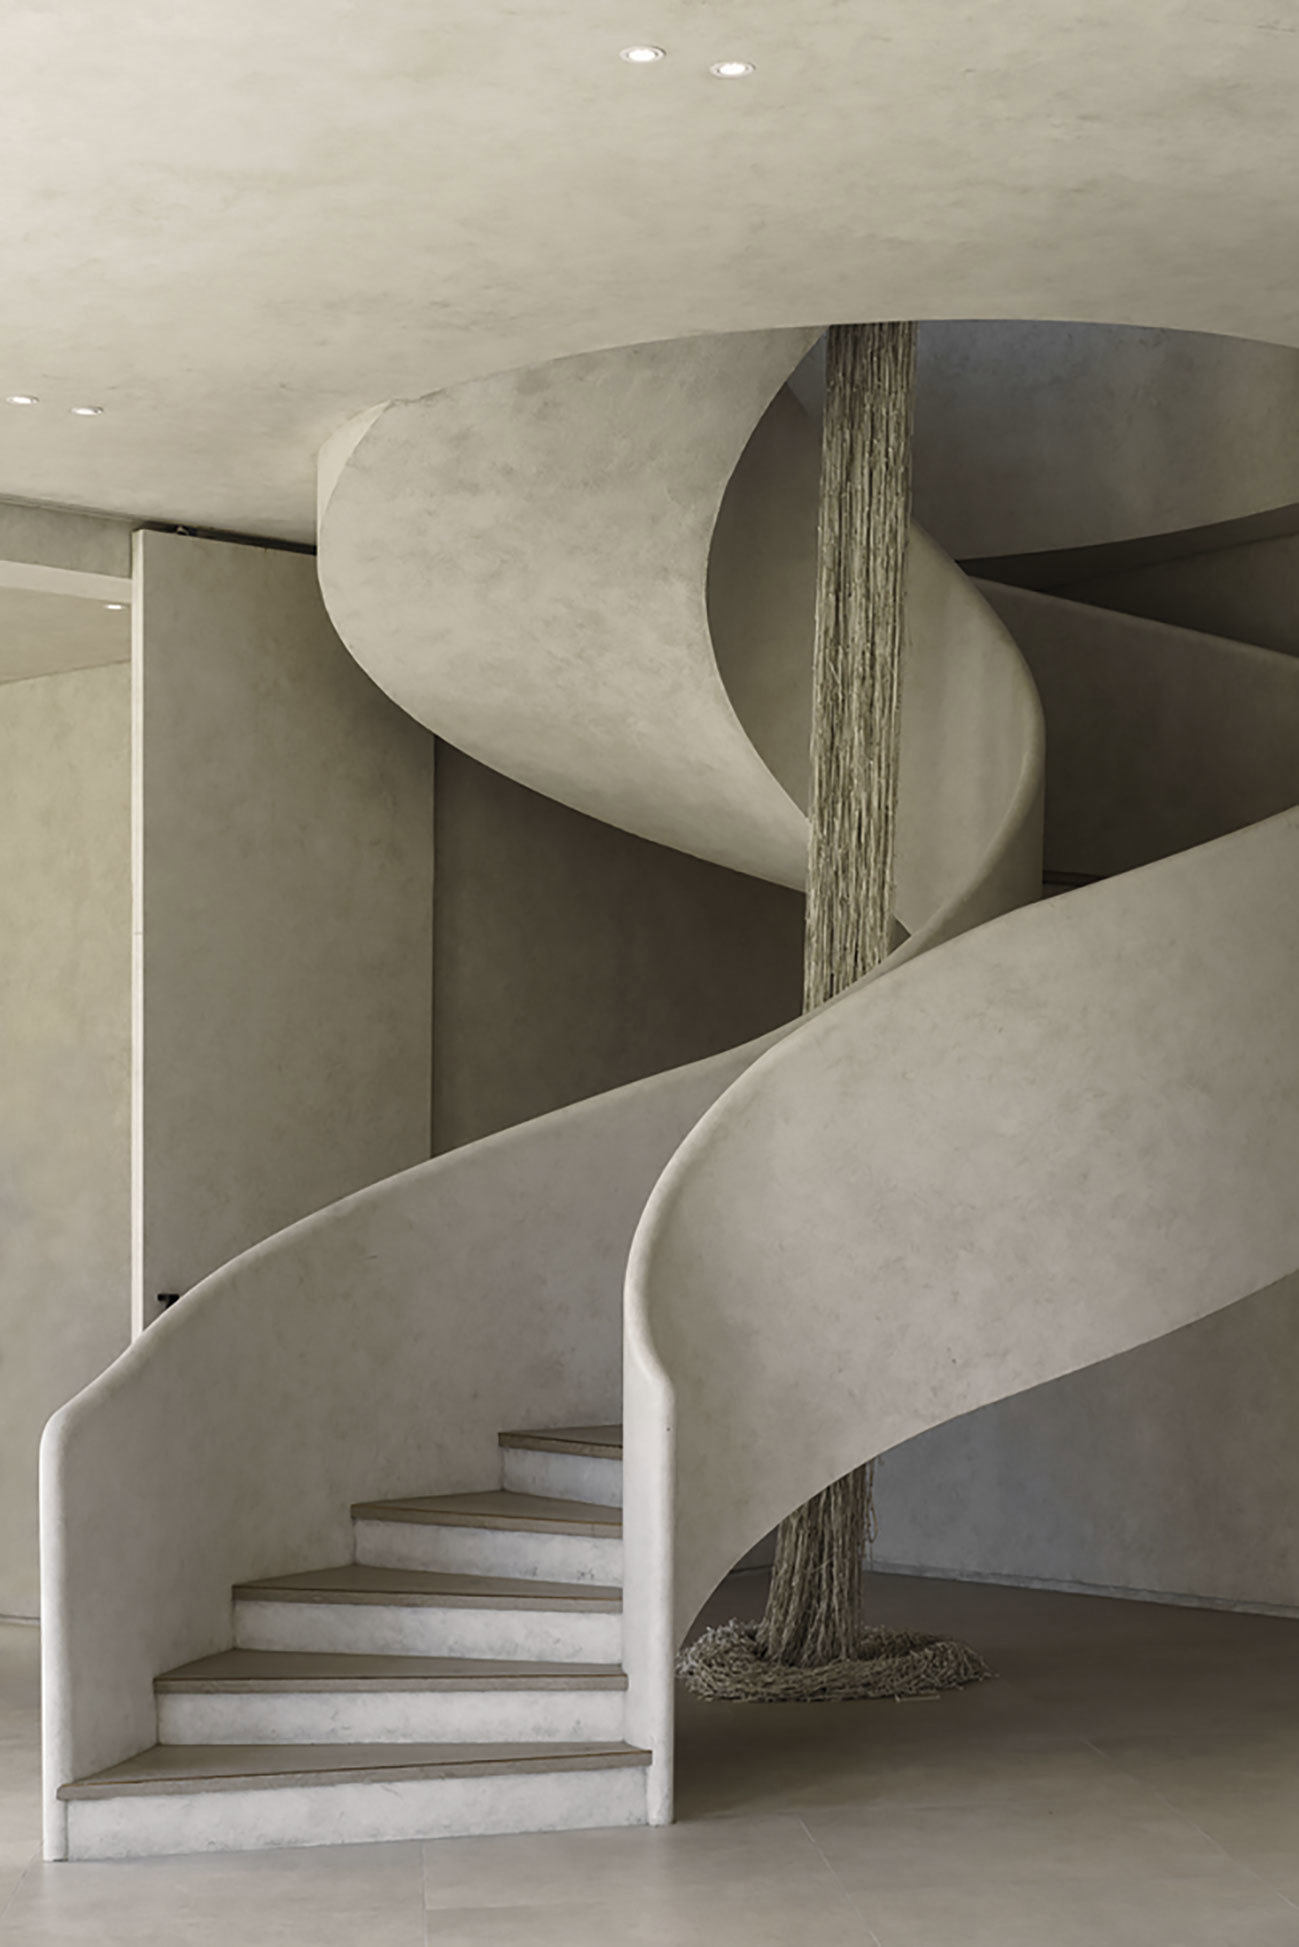 Escalera de Aliveus Architecture con formas sinuosas y punto de inflexio´n en el centro